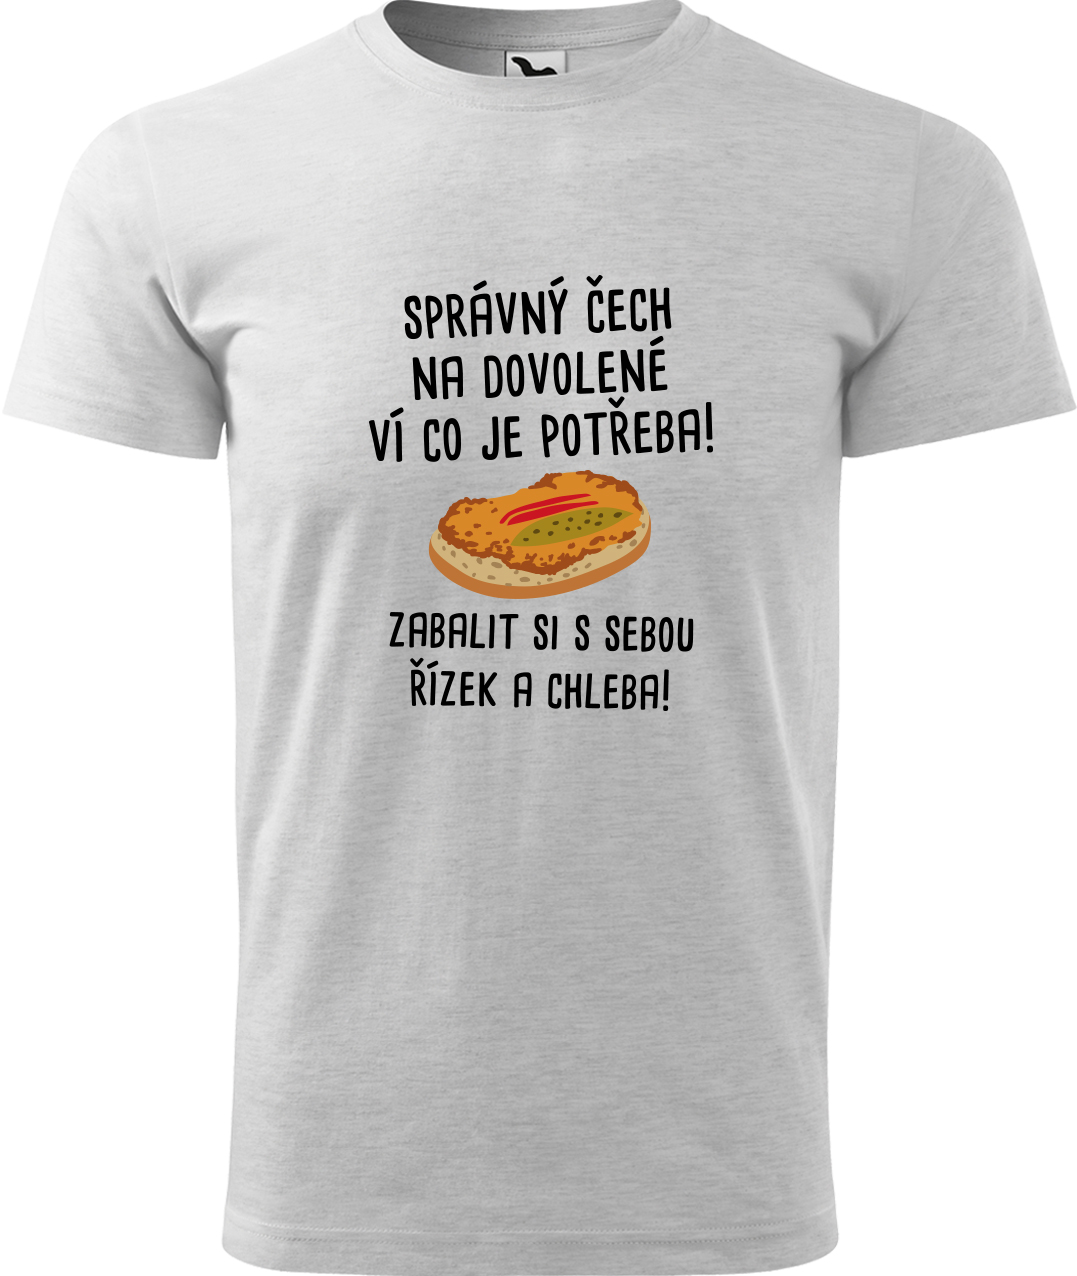 Pánské cestovatelské tričko - Správný Čech na dovolené, ví co je potřeba! Velikost: L, Barva: Světle šedý melír (03), Střih: pánský